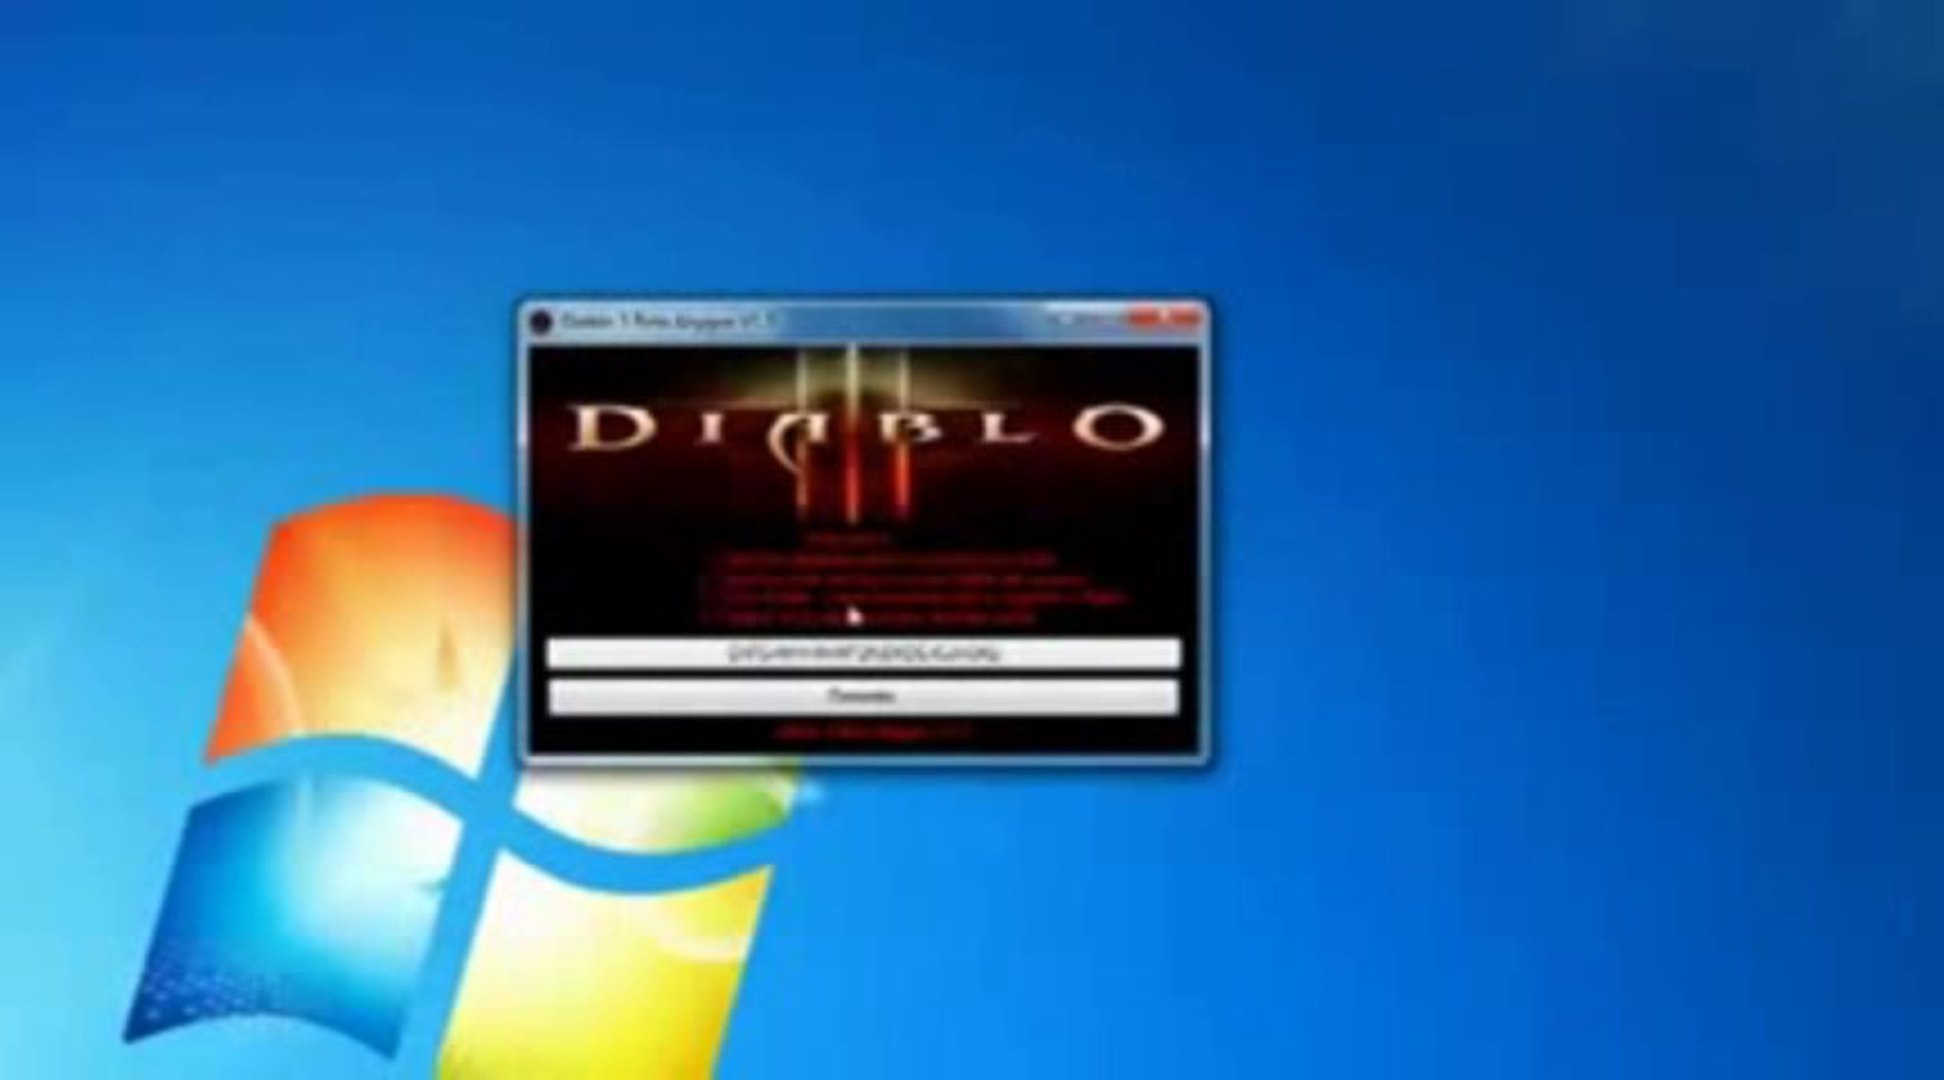 Diablo Iii Cd Key Generator By Everg0n